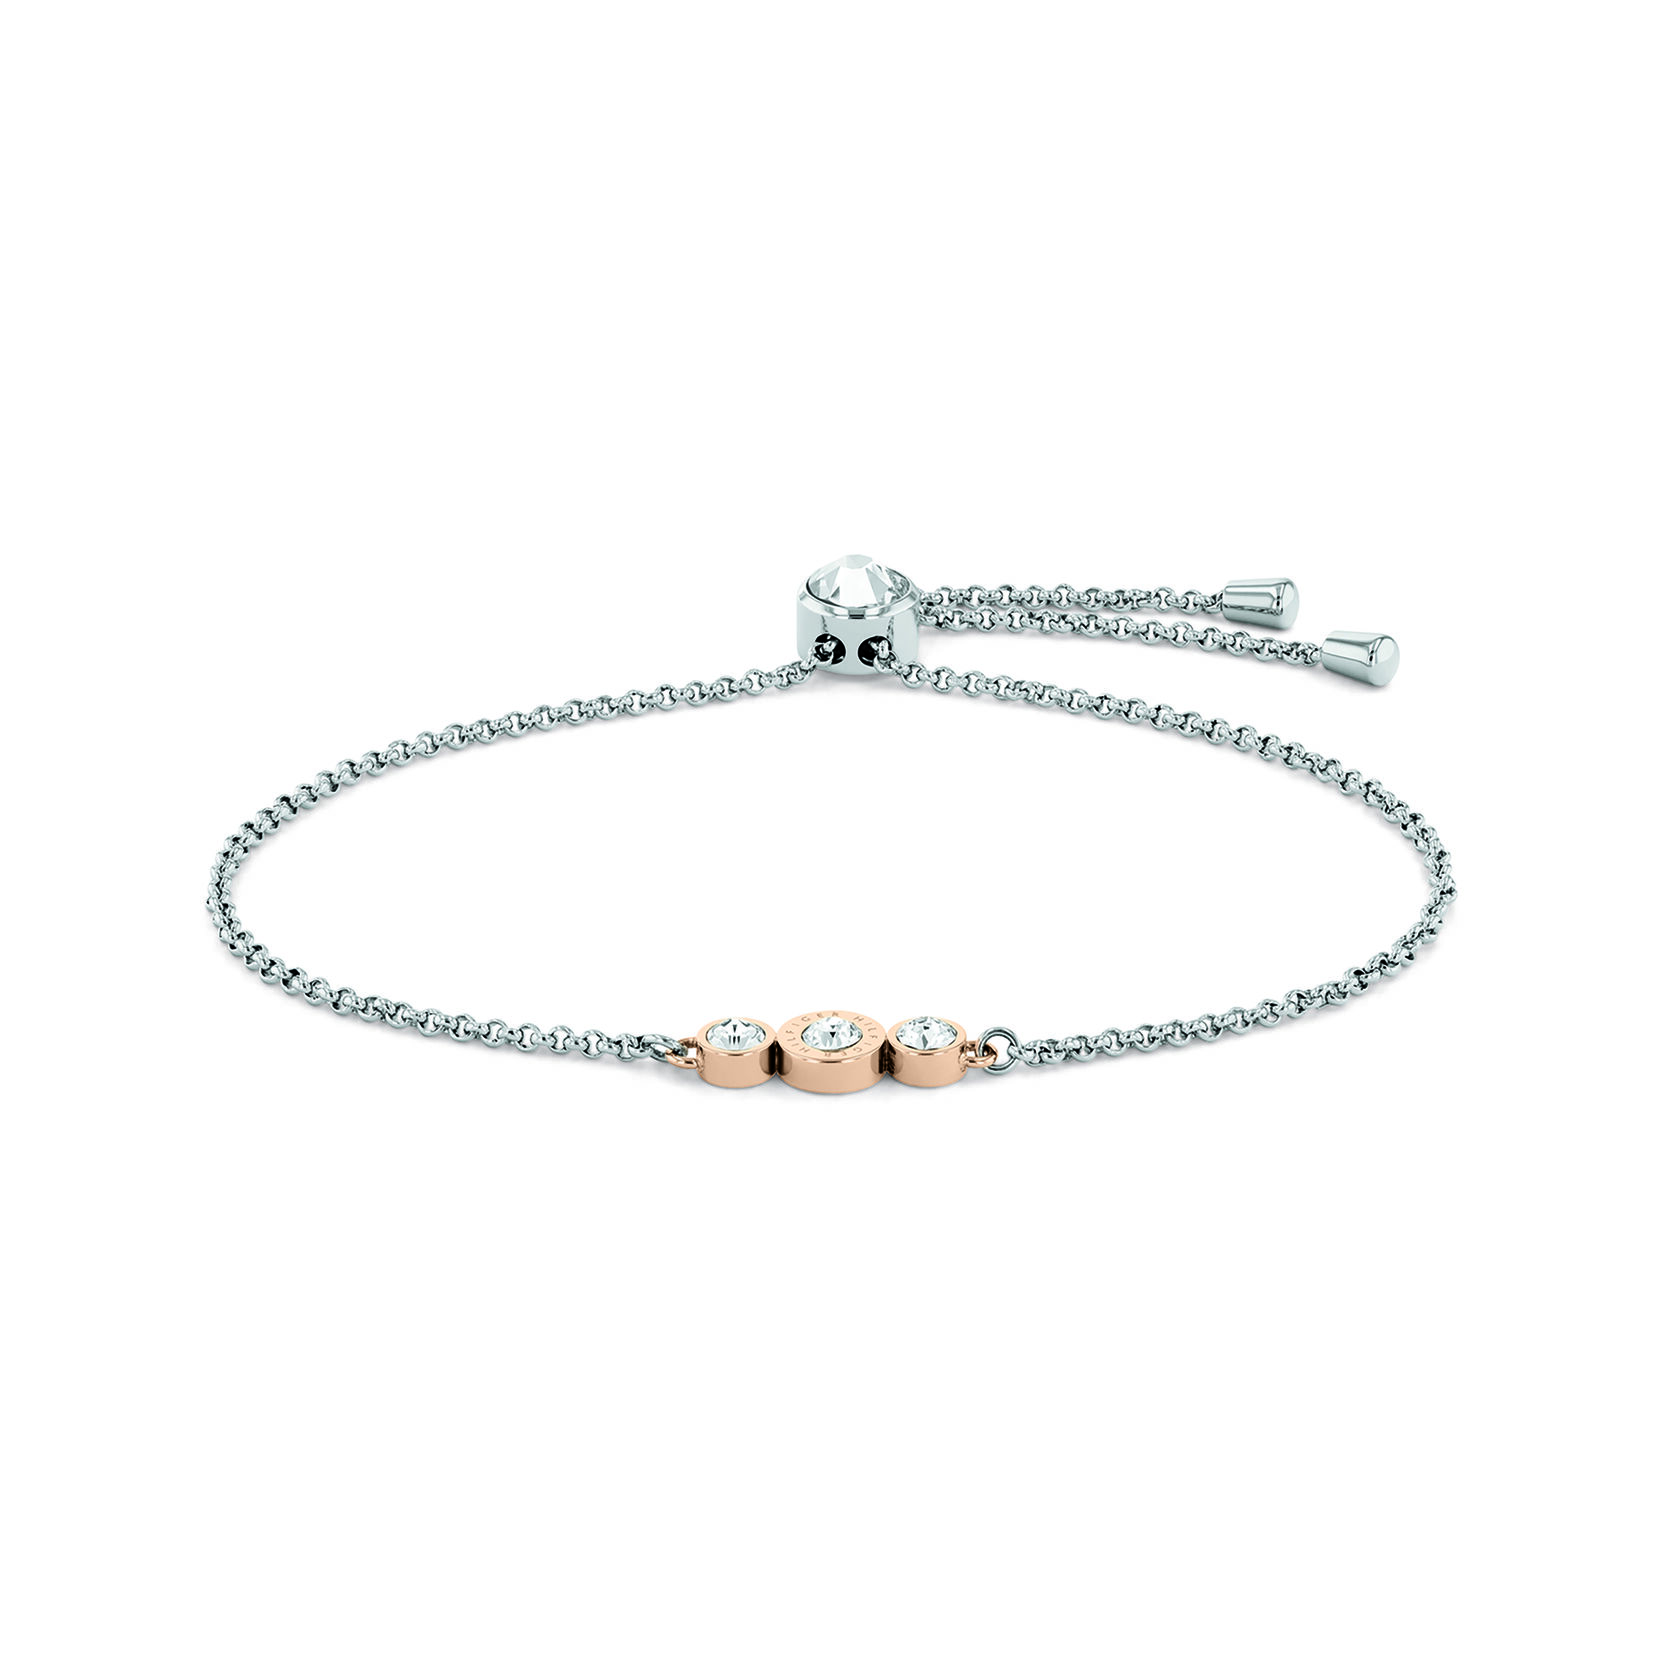 Tommy Hilfiger | Movado Company Store | Tommy Hilfiger Women's Bracelet